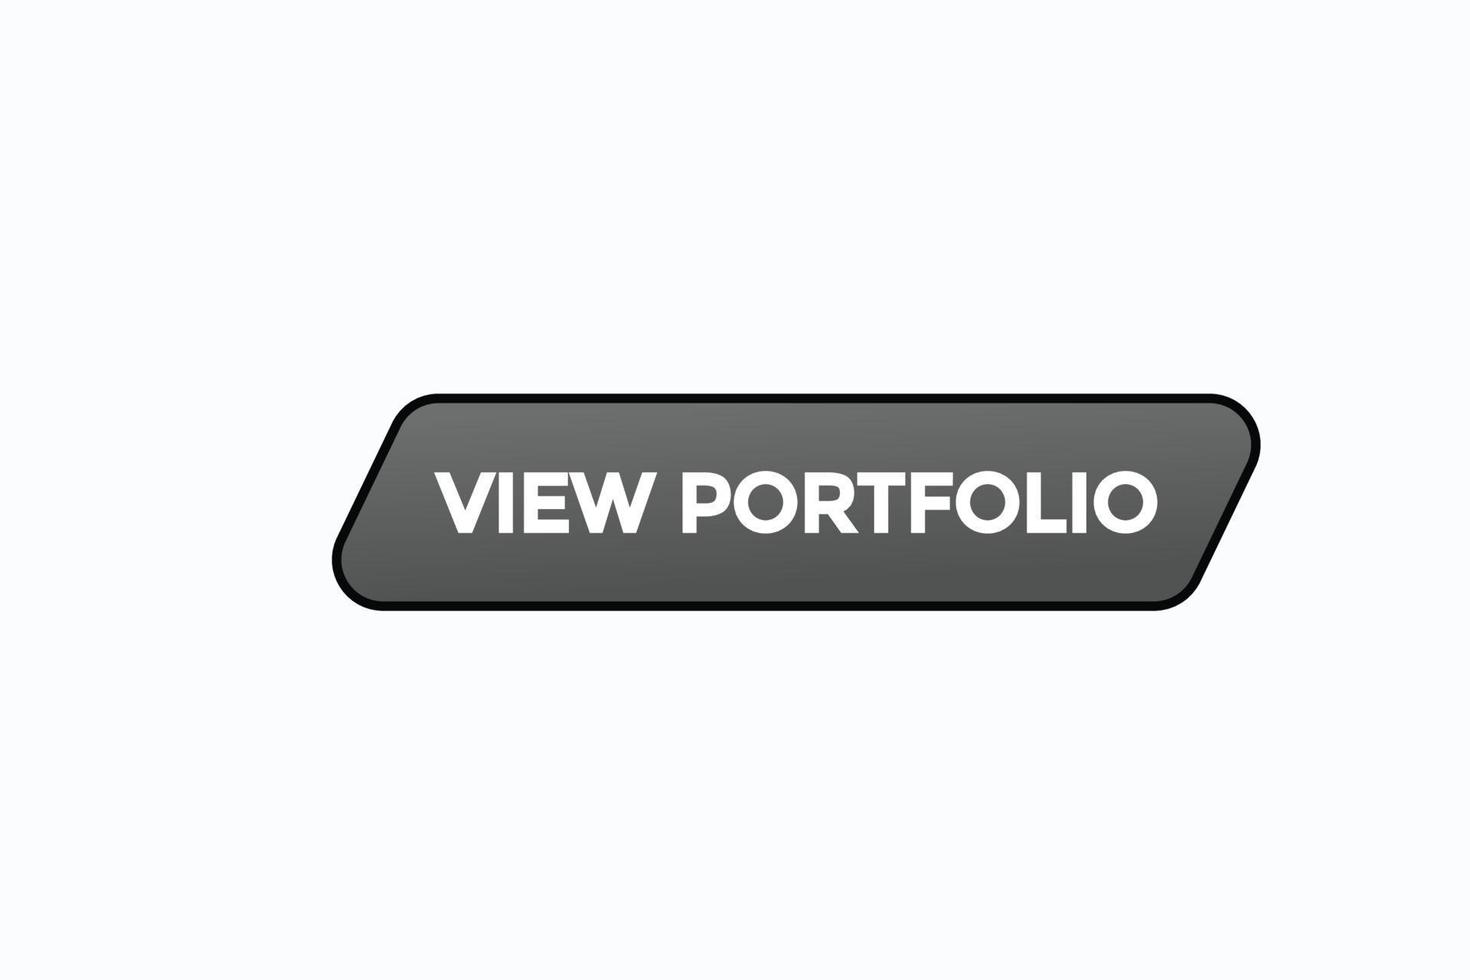 view portfolio button vectors.sign label speech bubble view portfolio vector